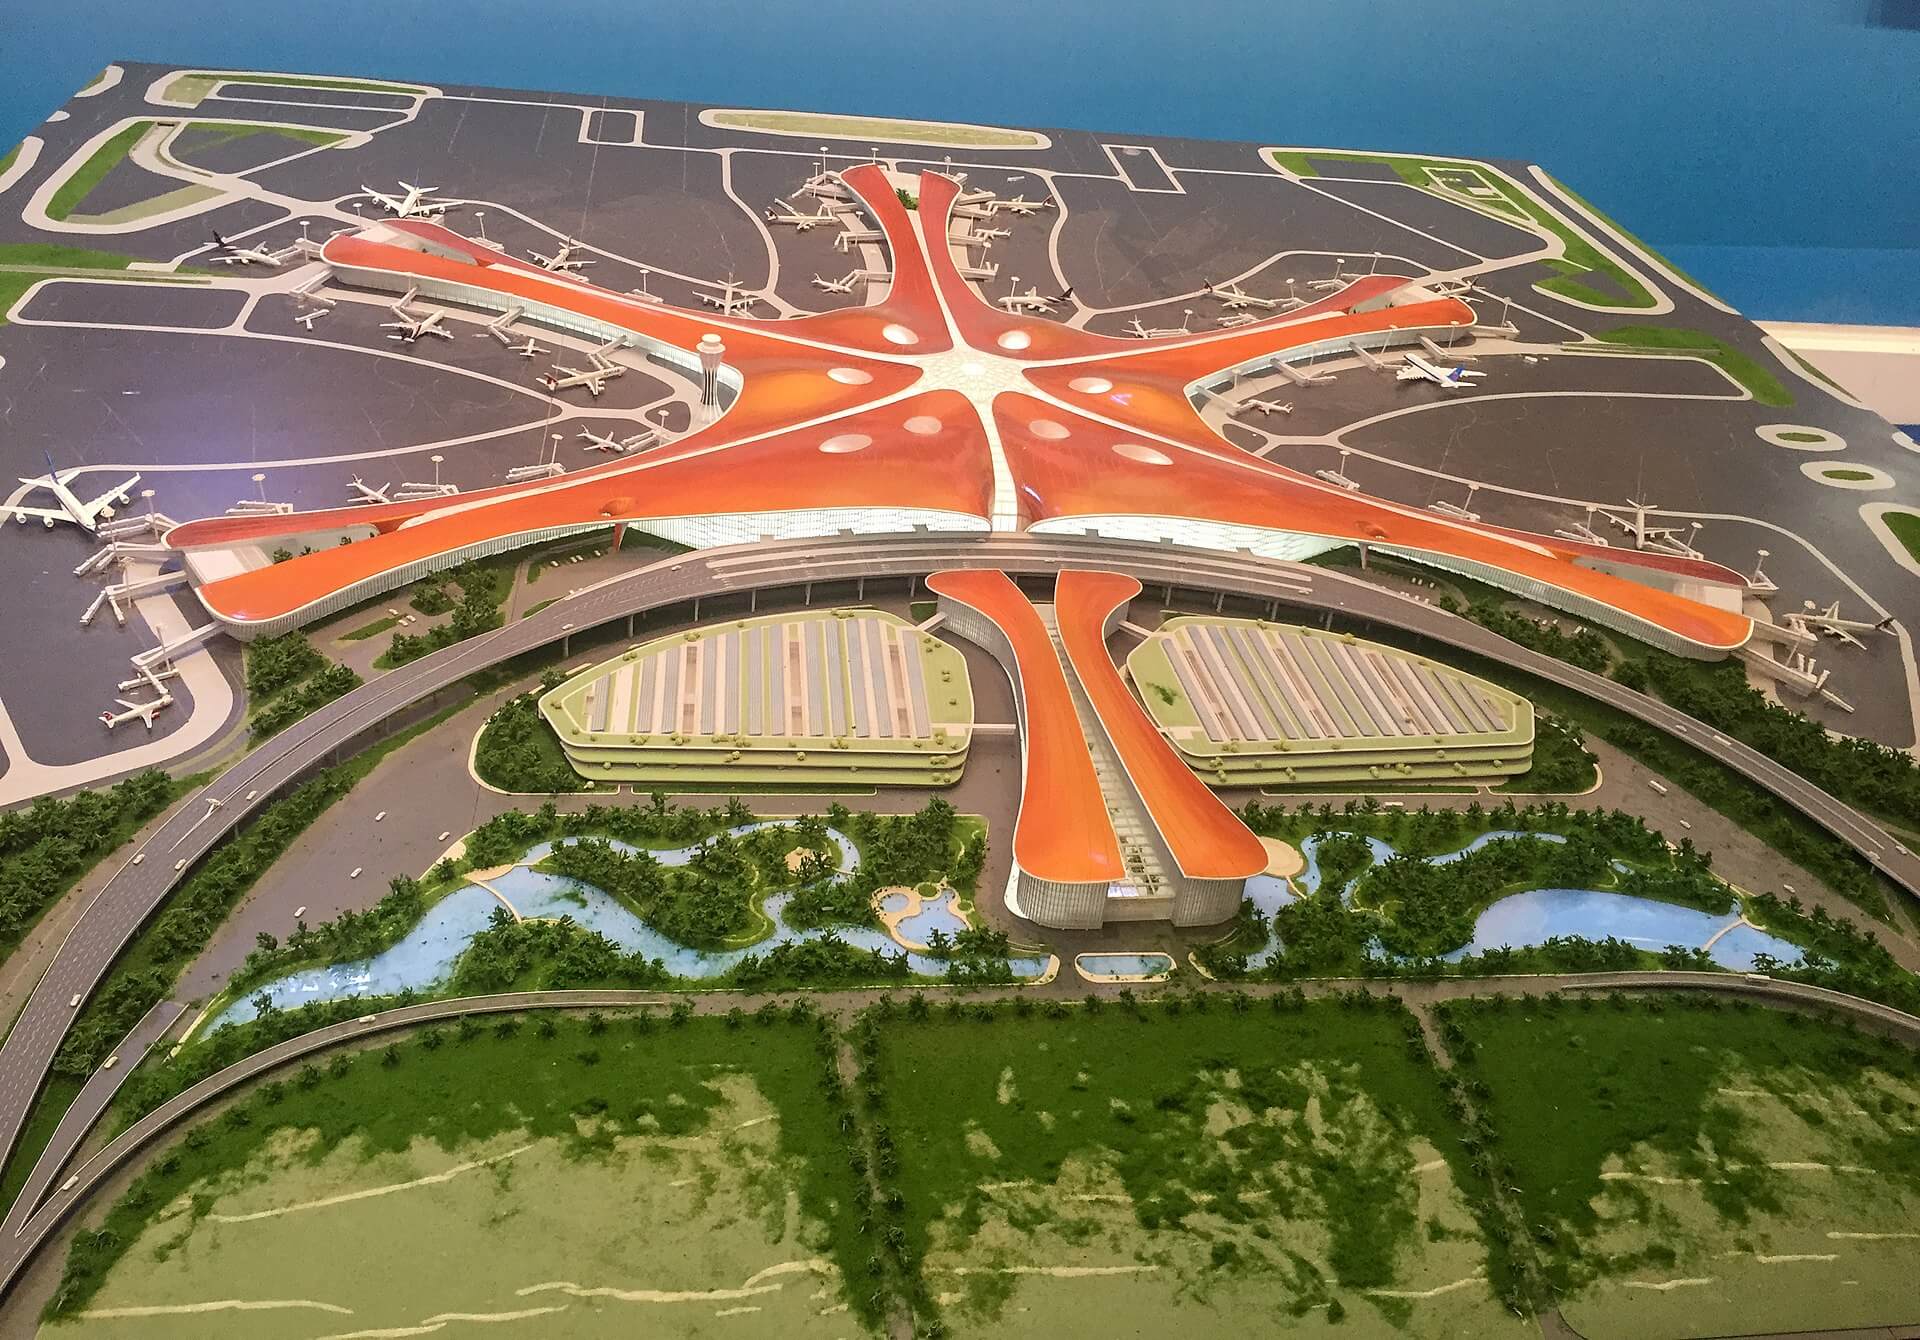 1920px-मॉडल_ऑफ़_बीजिंग_नया_एयरपोर्ट_at_the_पंचवर्षीय_उपलब्धियां_प्रदर्शन_20171015150600